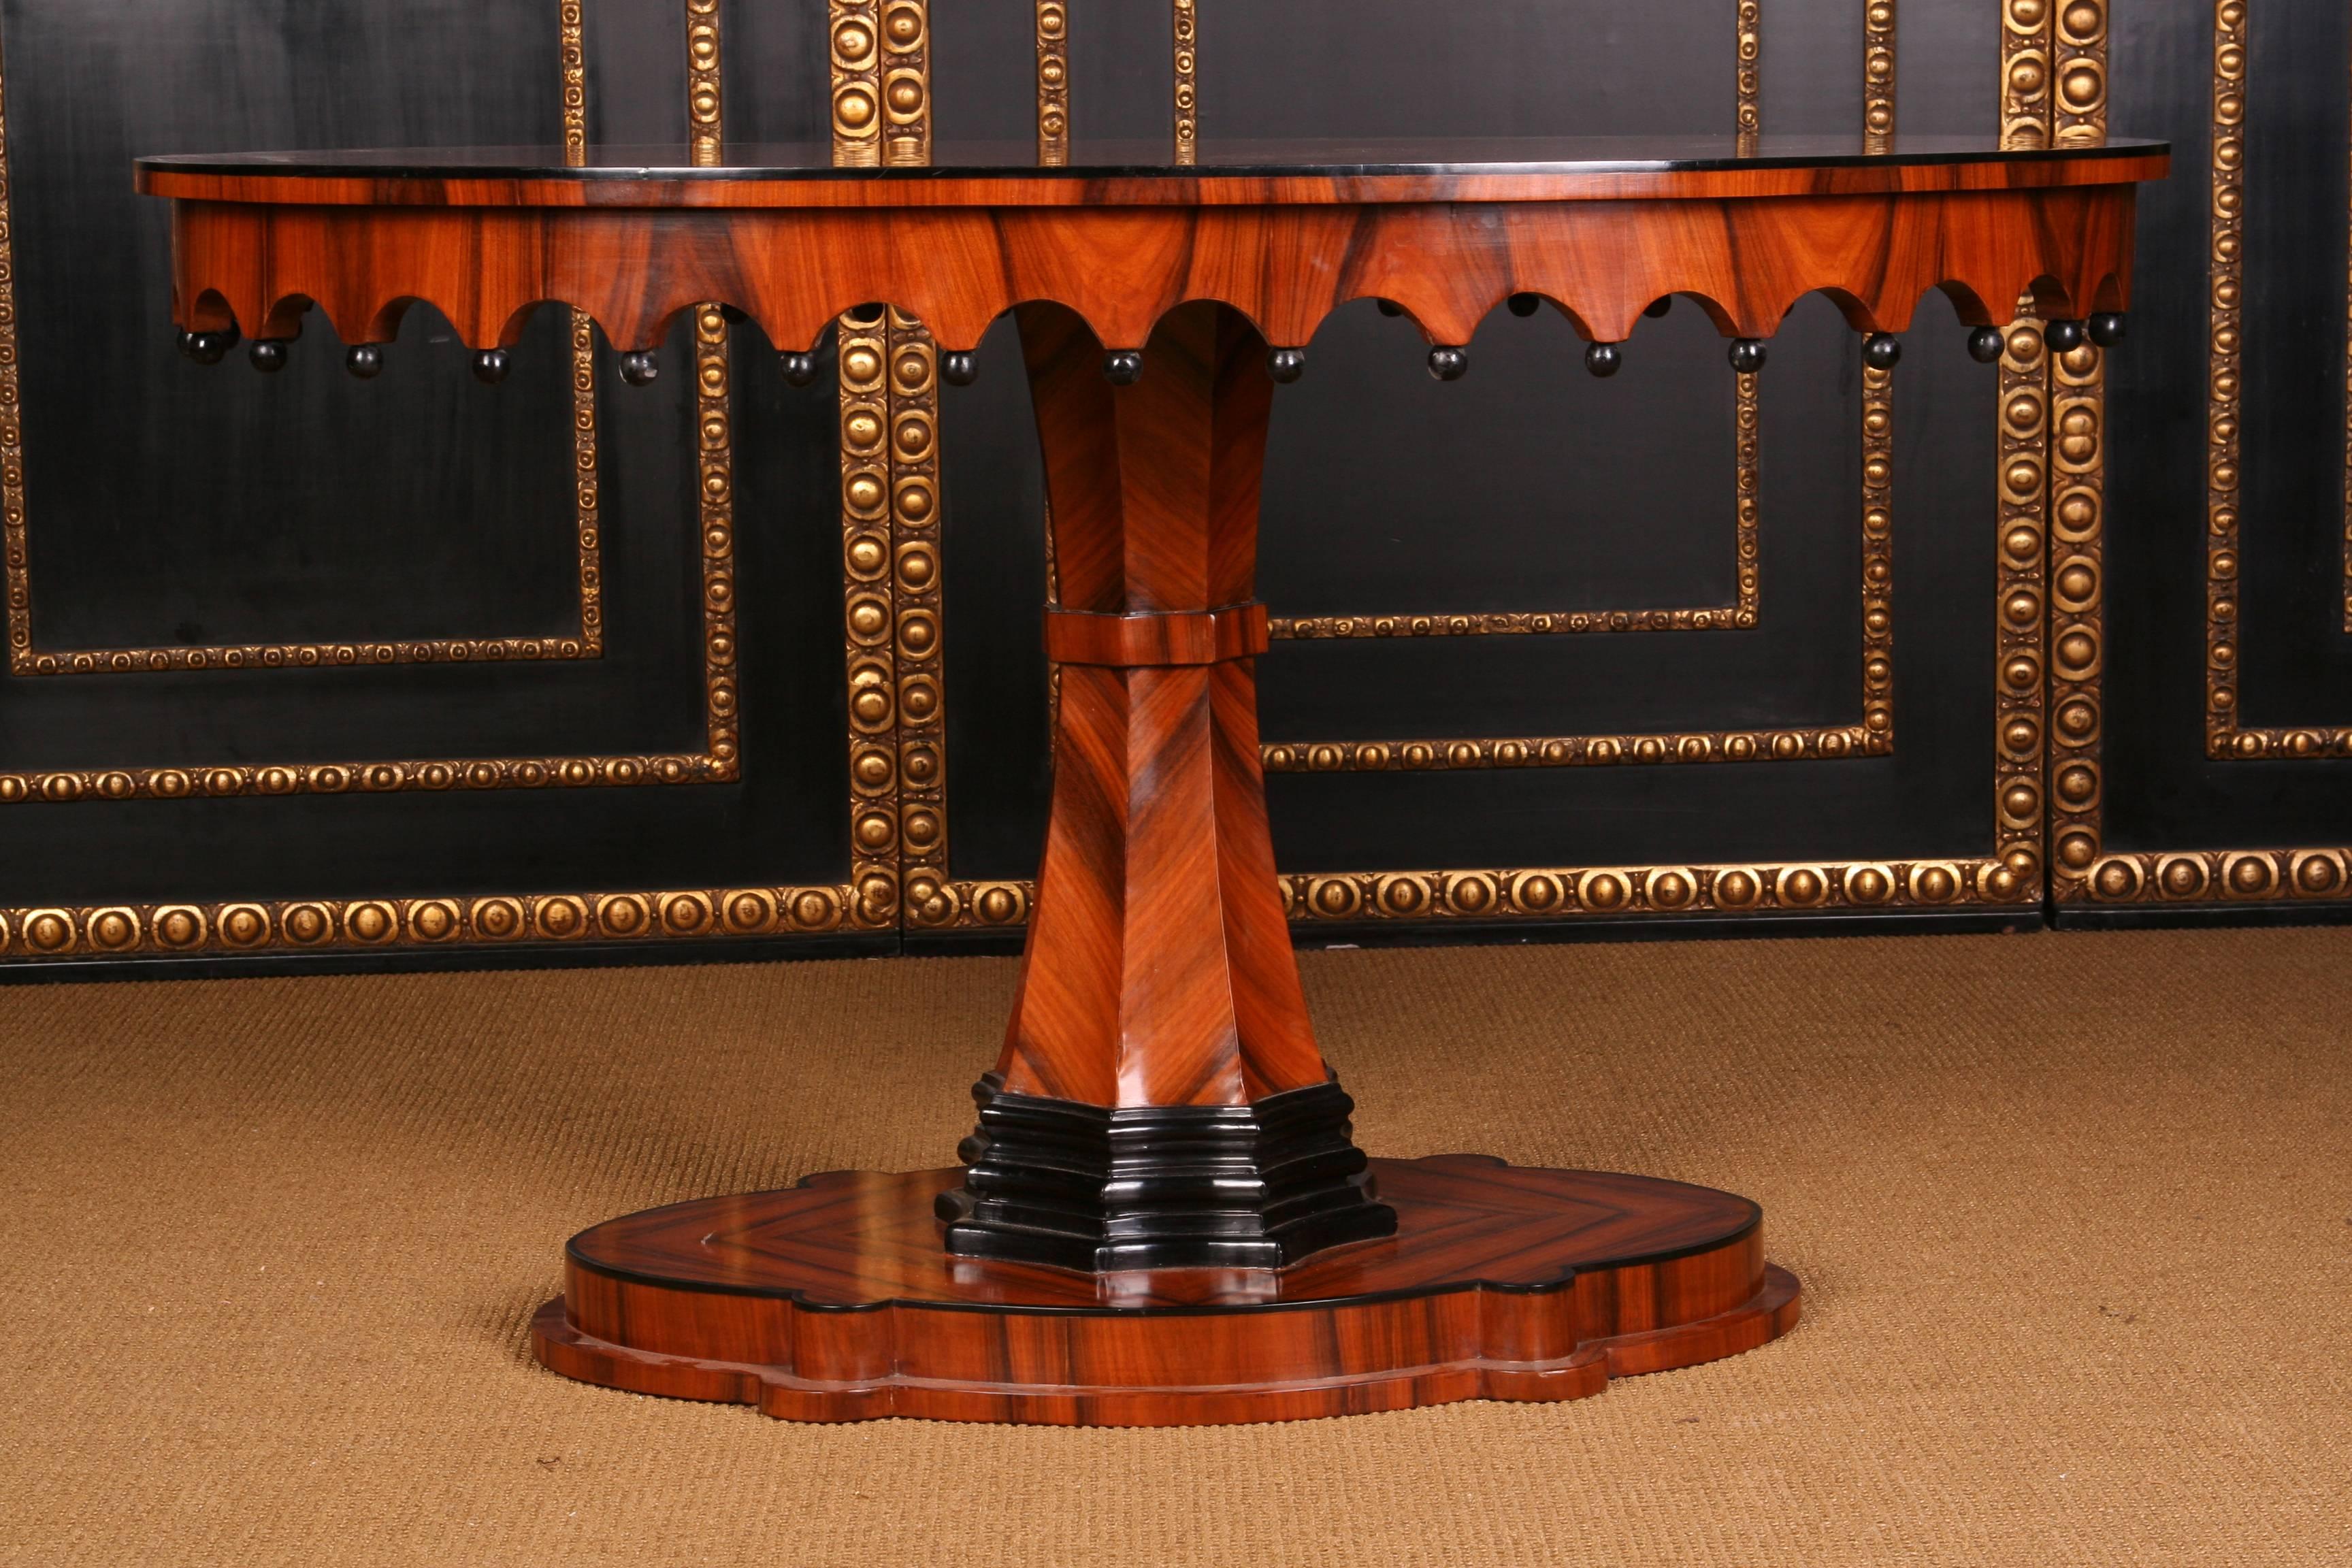 Exceptionnellement jolie table ovale de style Biedermeier.
bois massif, partiellement noirci. Piédestal ovale, cambré et profilé. Arbre de colonne moyen ascendant, octuple, en éventail, partiellement noirci. Bordure gothique avec un